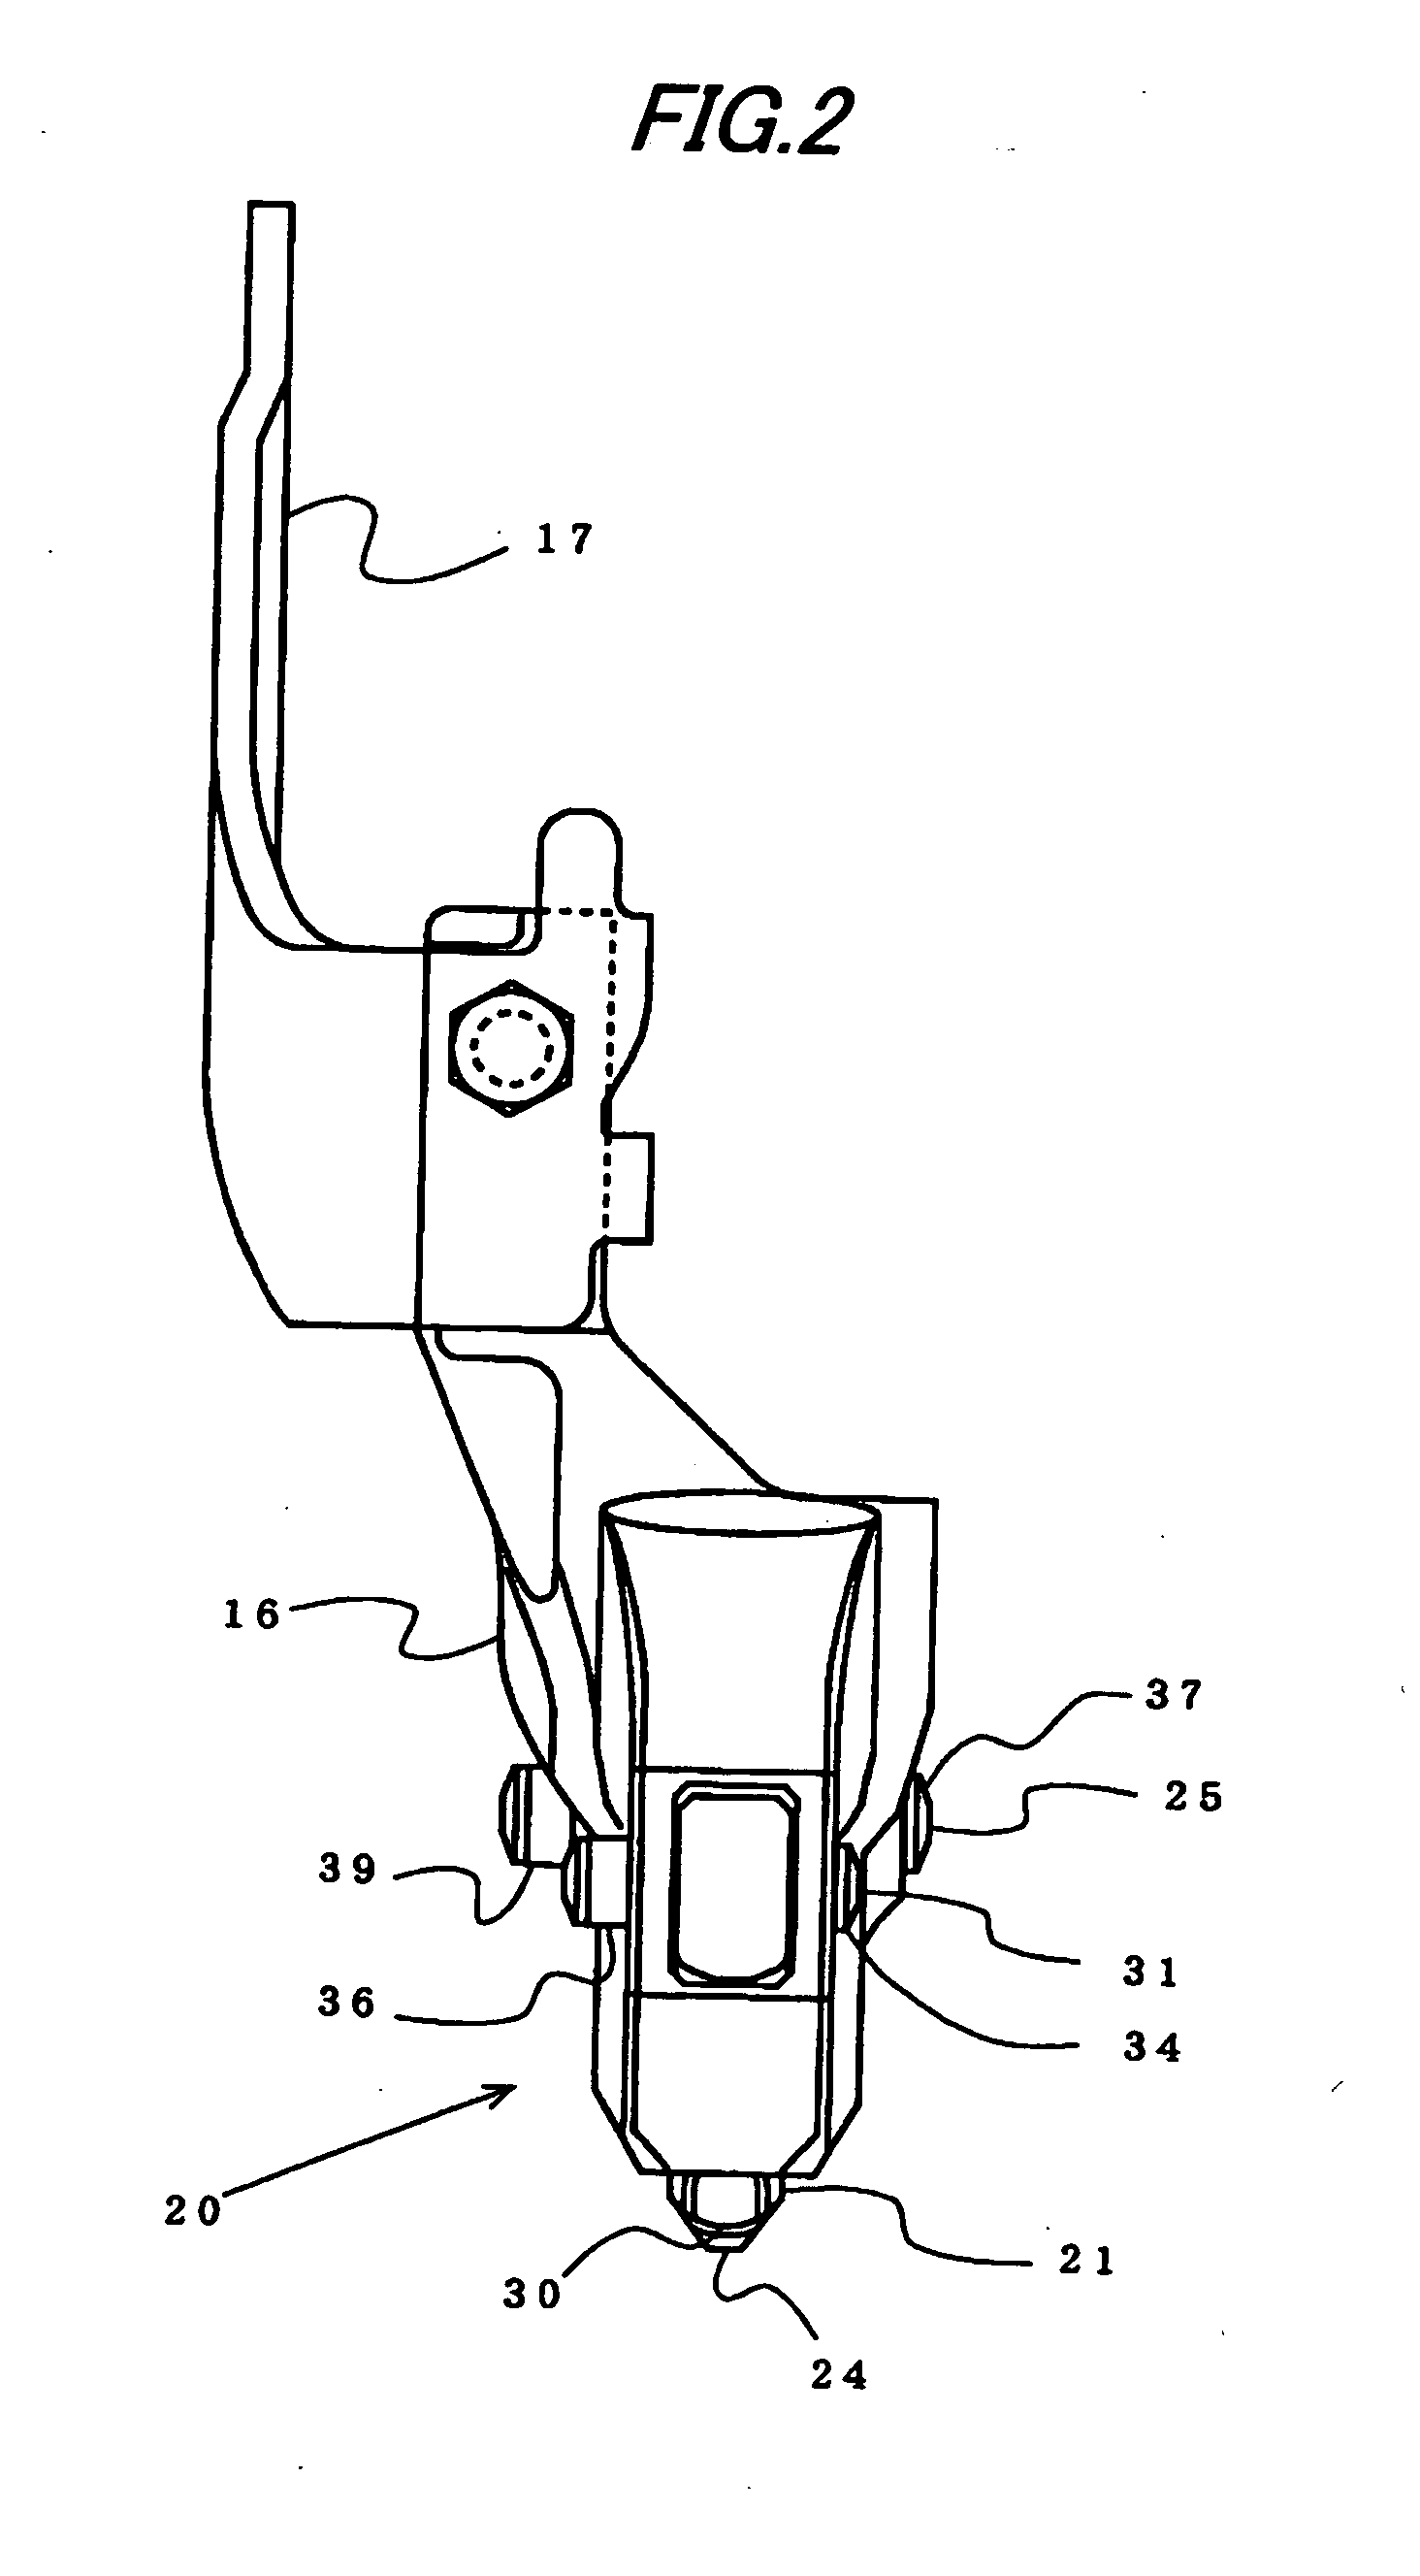 Nail Guiding Apparatus of Nailing Machine